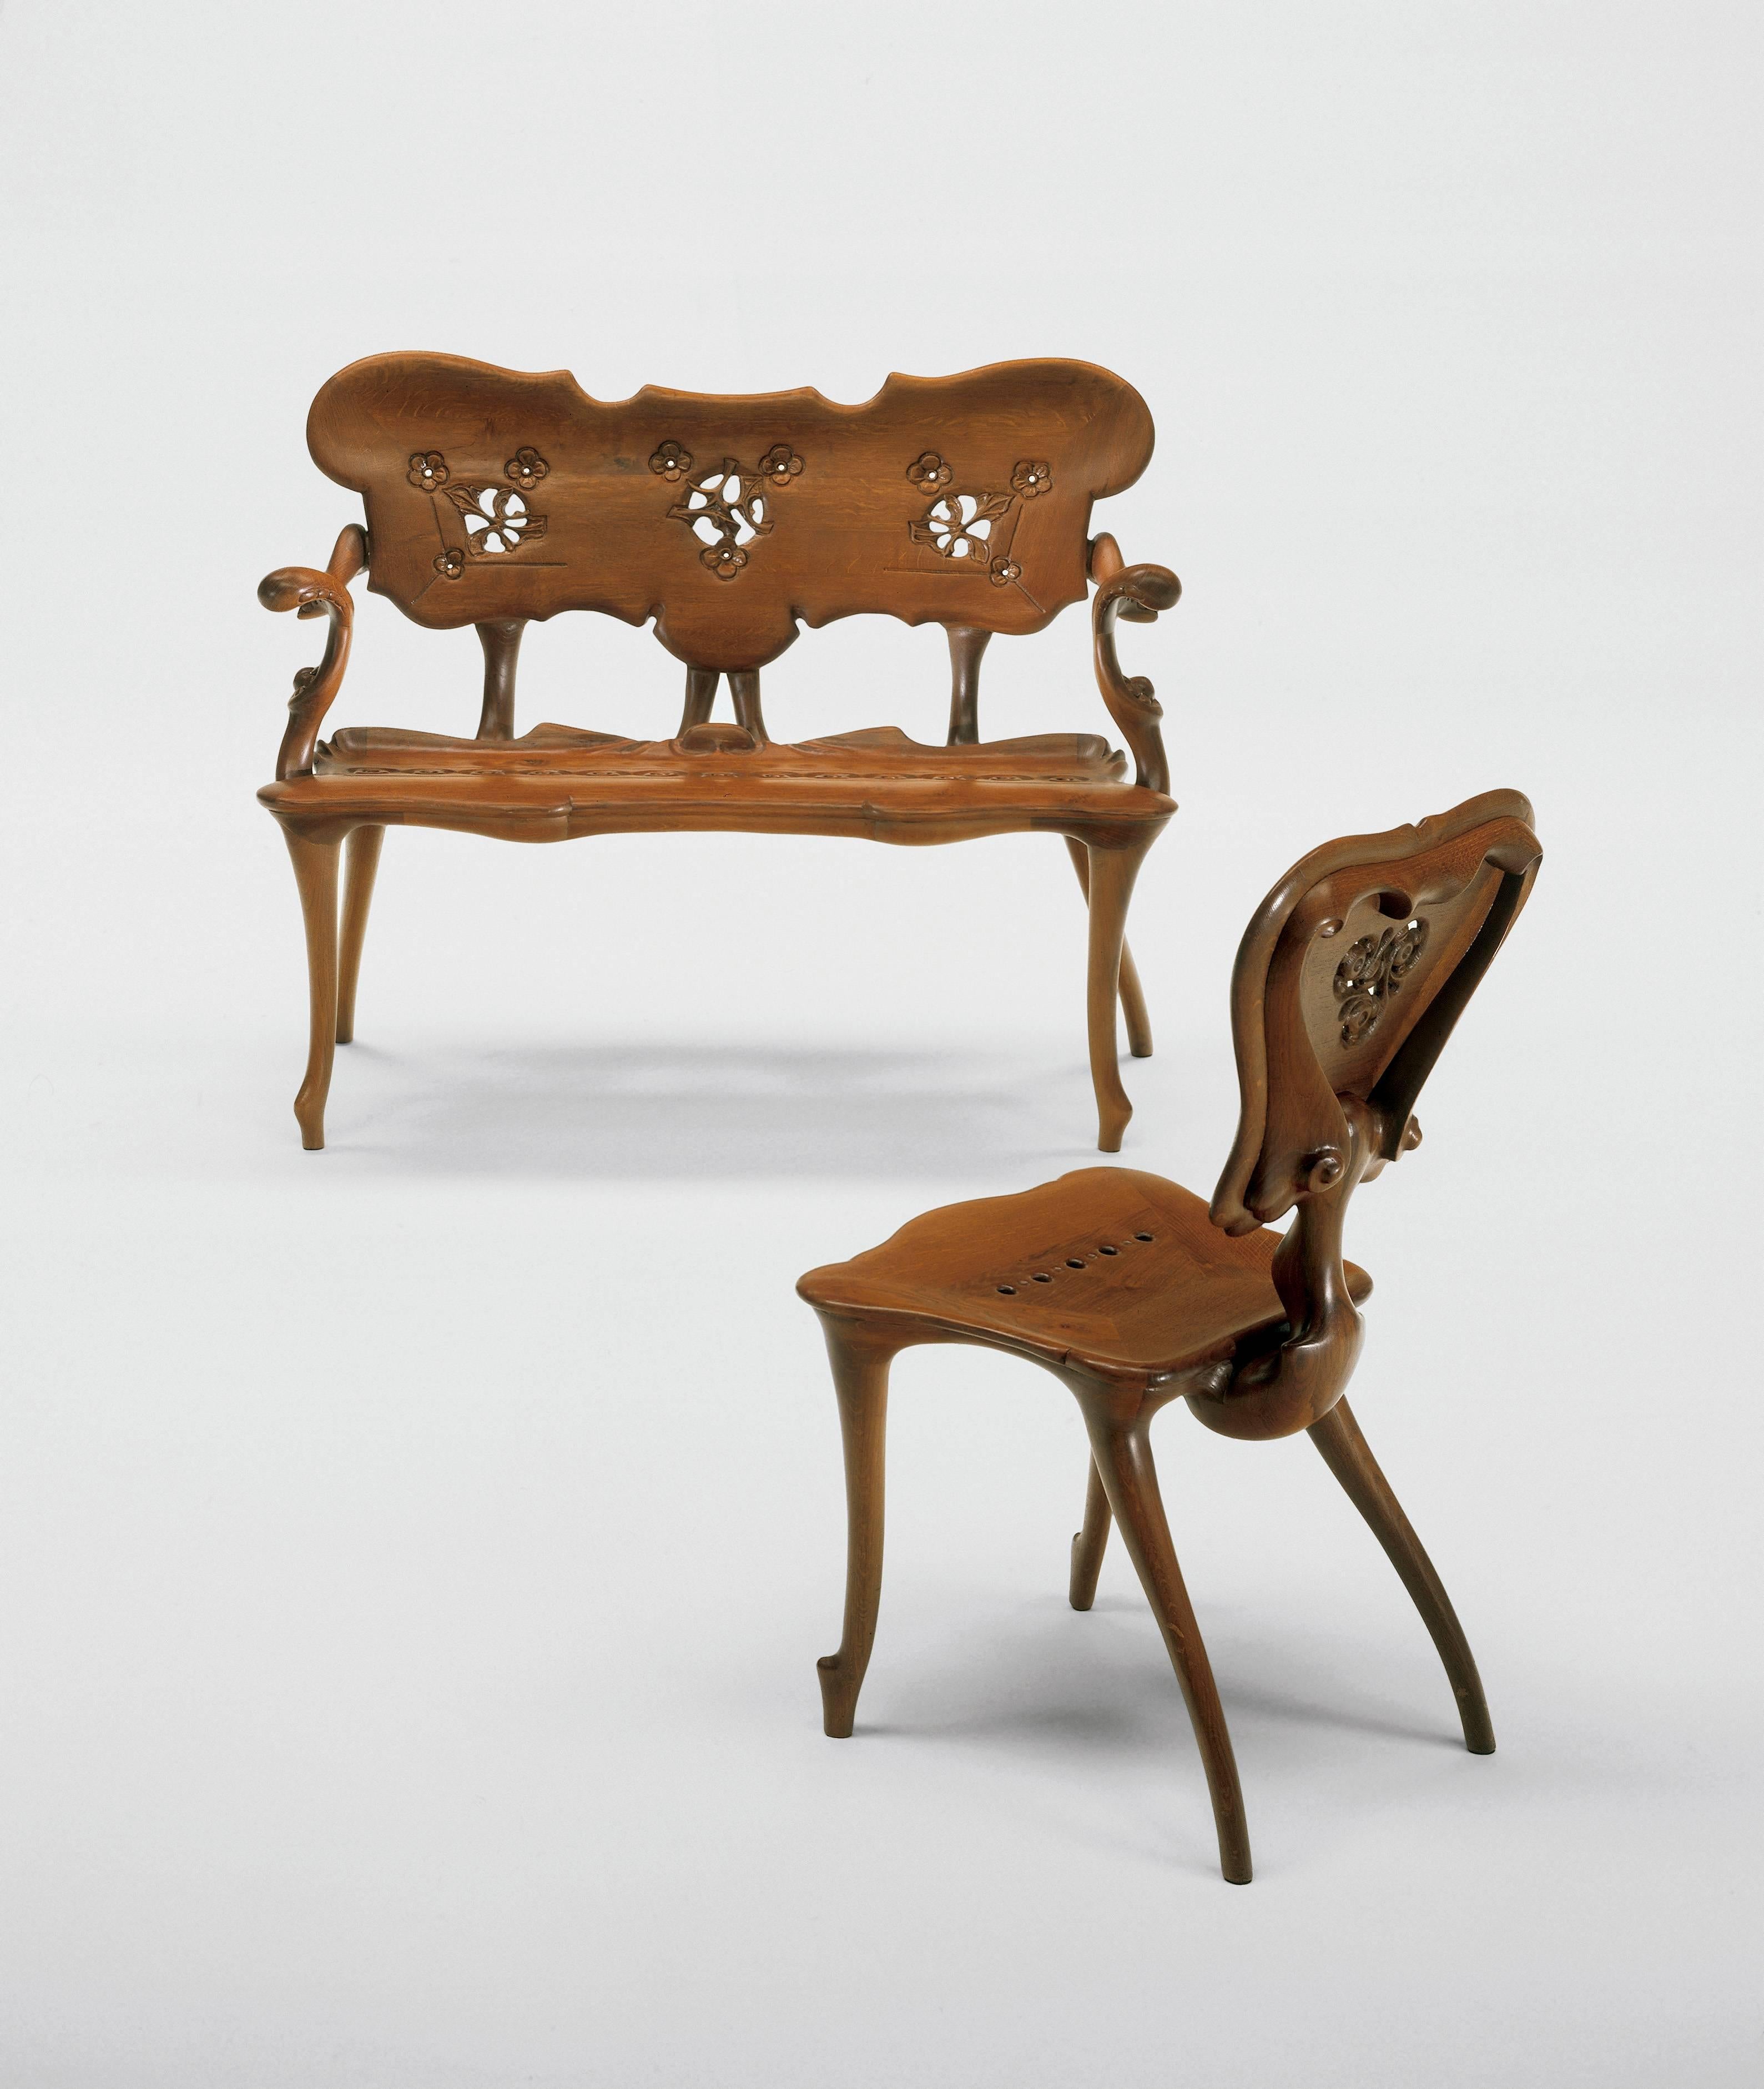 Jugendstil Antoni Gaudi Calvet Chair For Sale